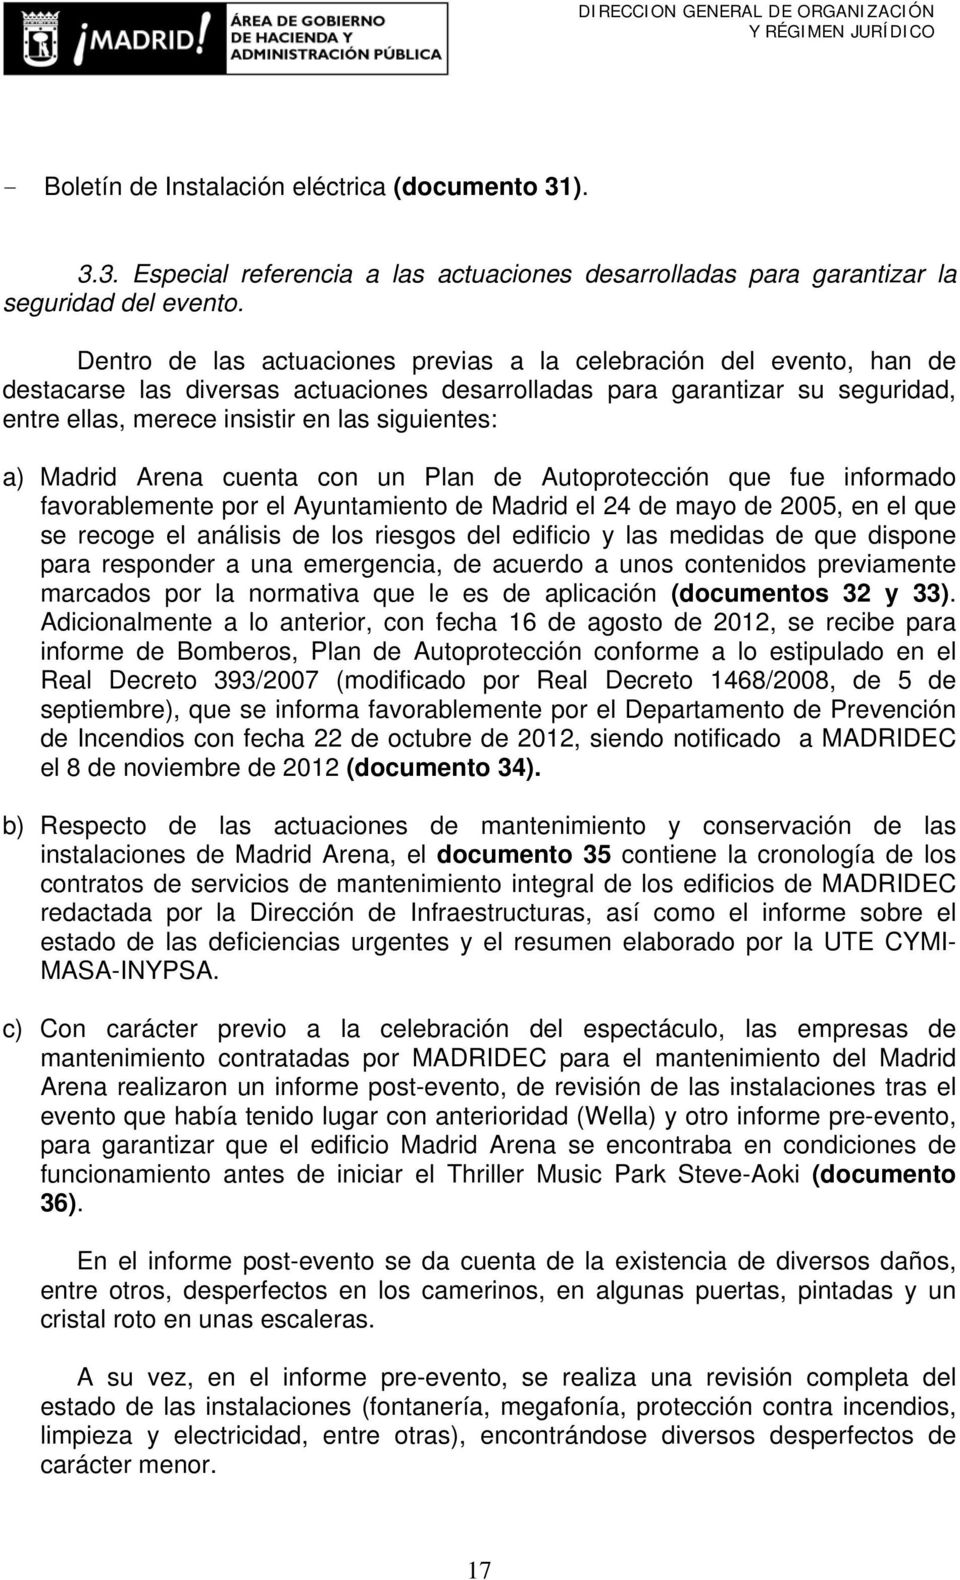 a) Madrid Arena cuenta con un Plan de Autoprotección que fue informado favorablemente por el Ayuntamiento de Madrid el 24 de mayo de 2005, en el que se recoge el análisis de los riesgos del edificio